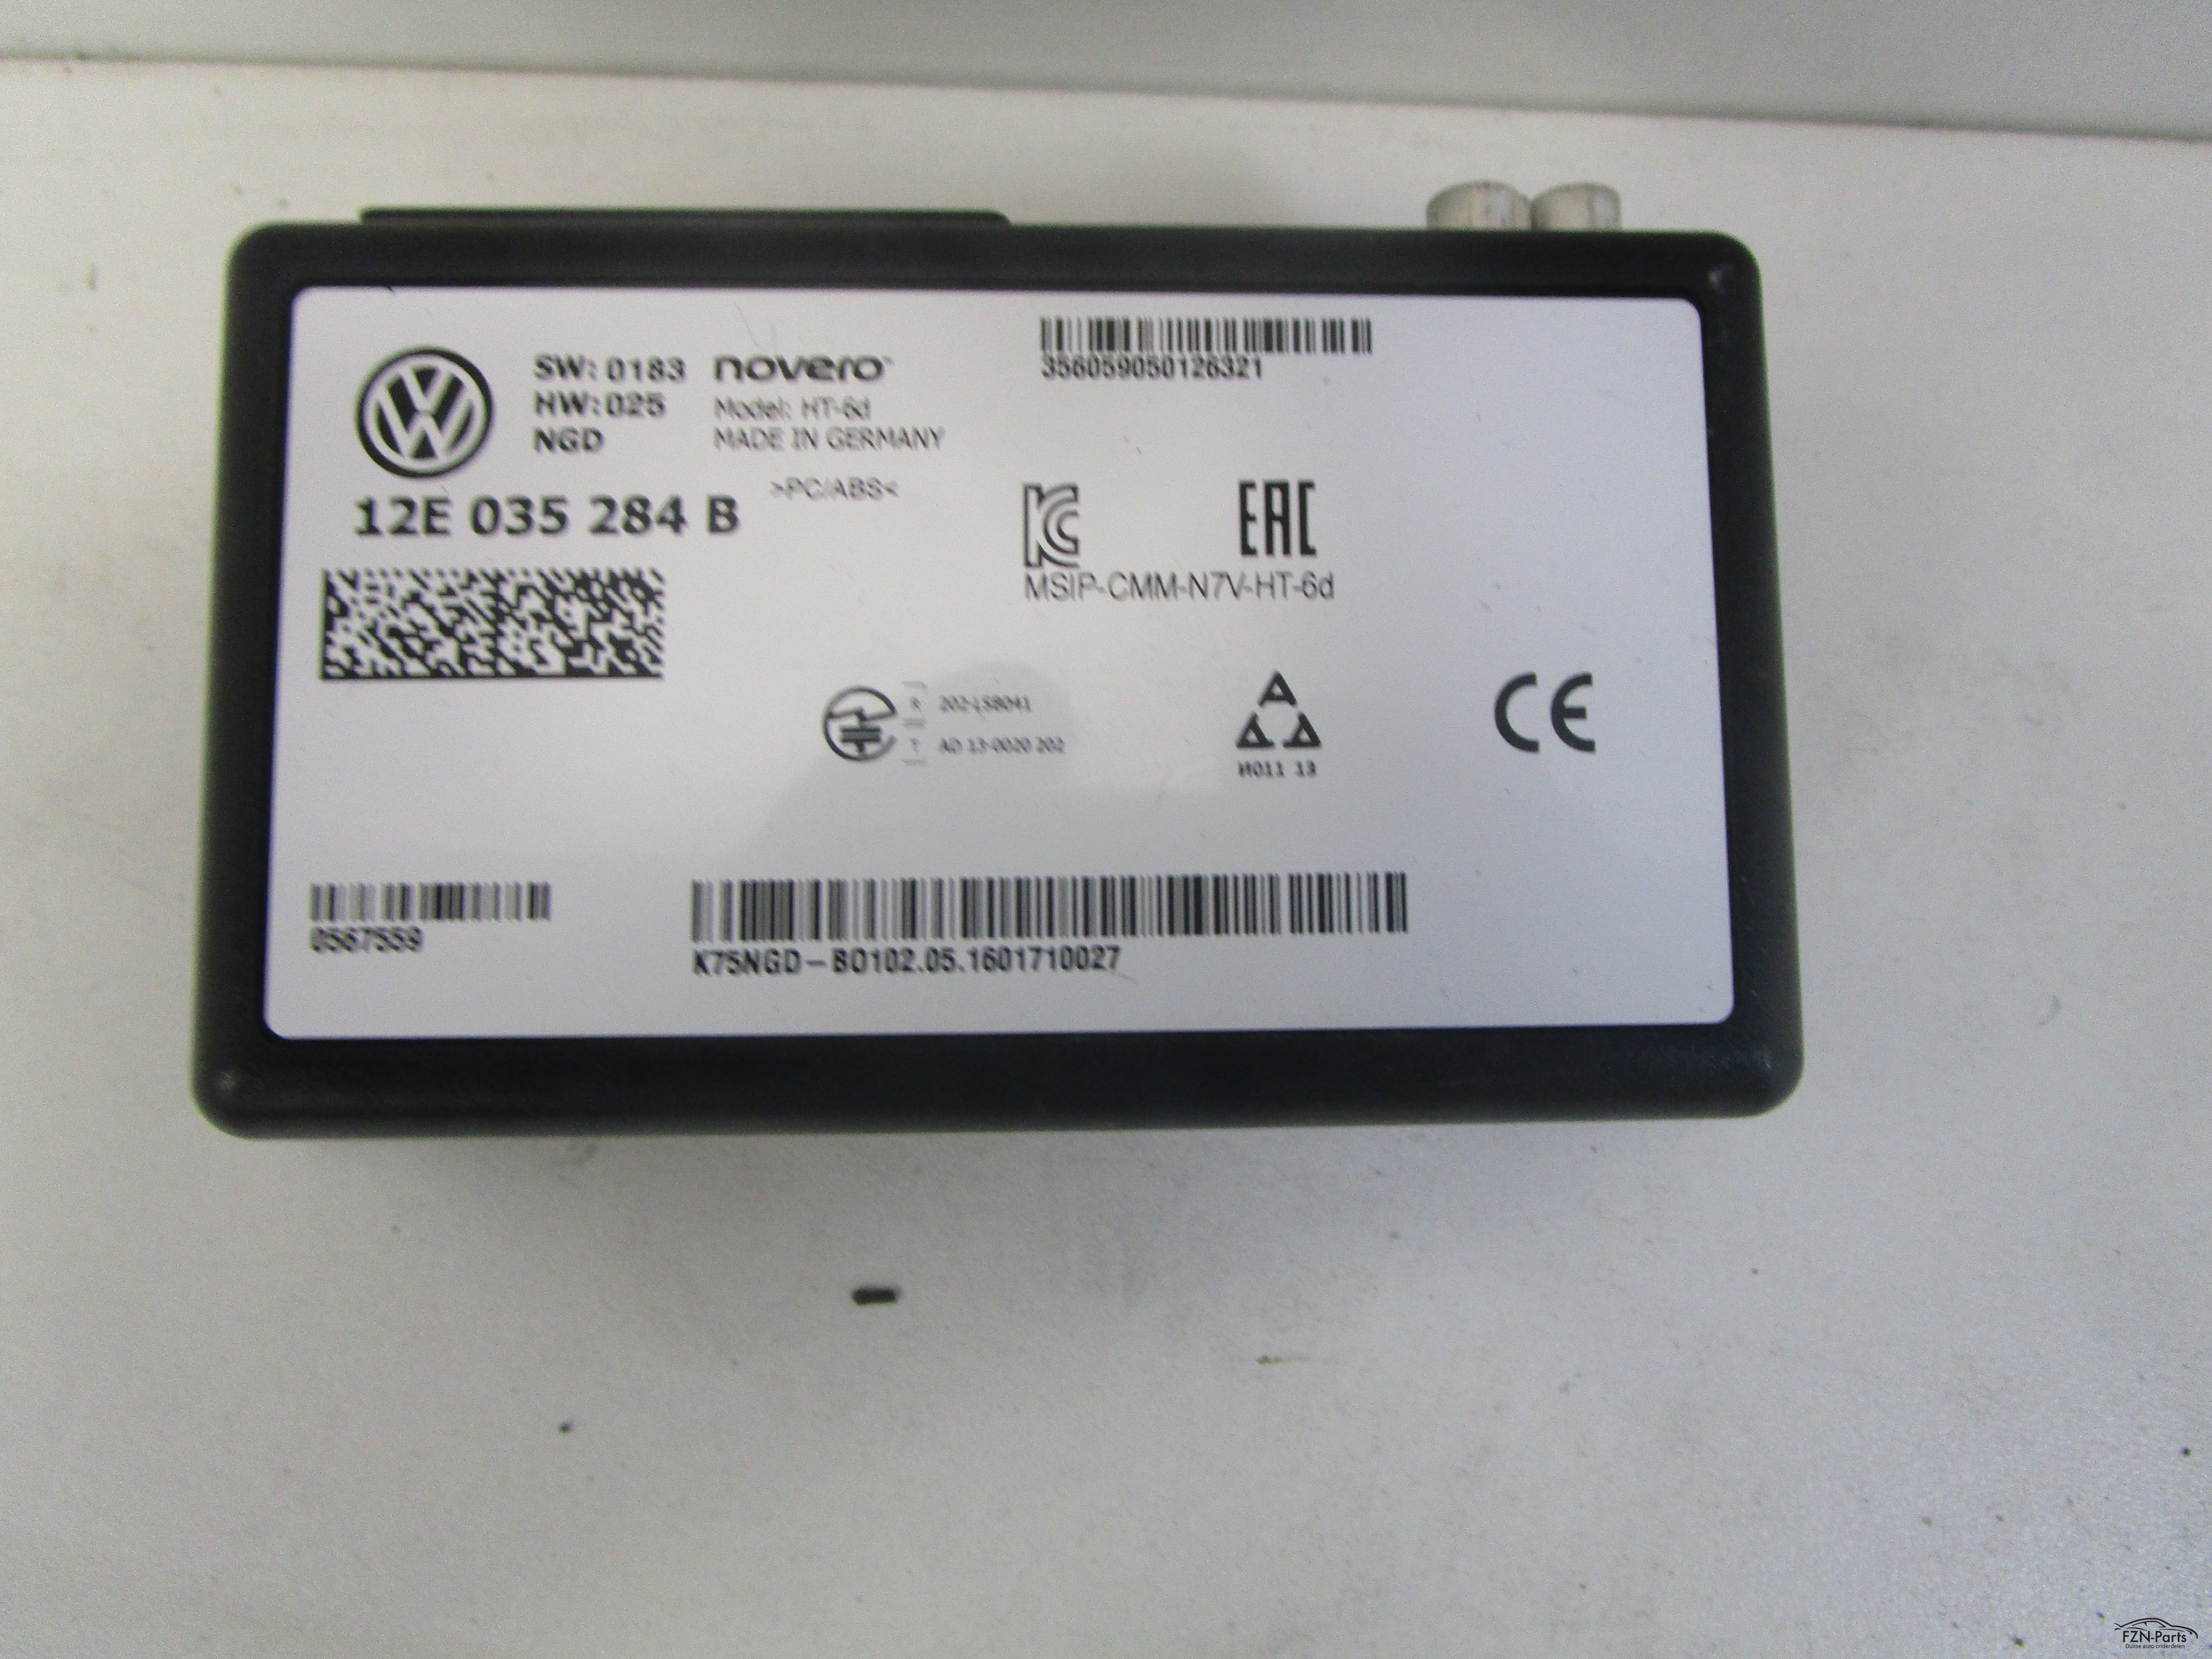 VW E-UP! Online Diensten Module 12E035284B